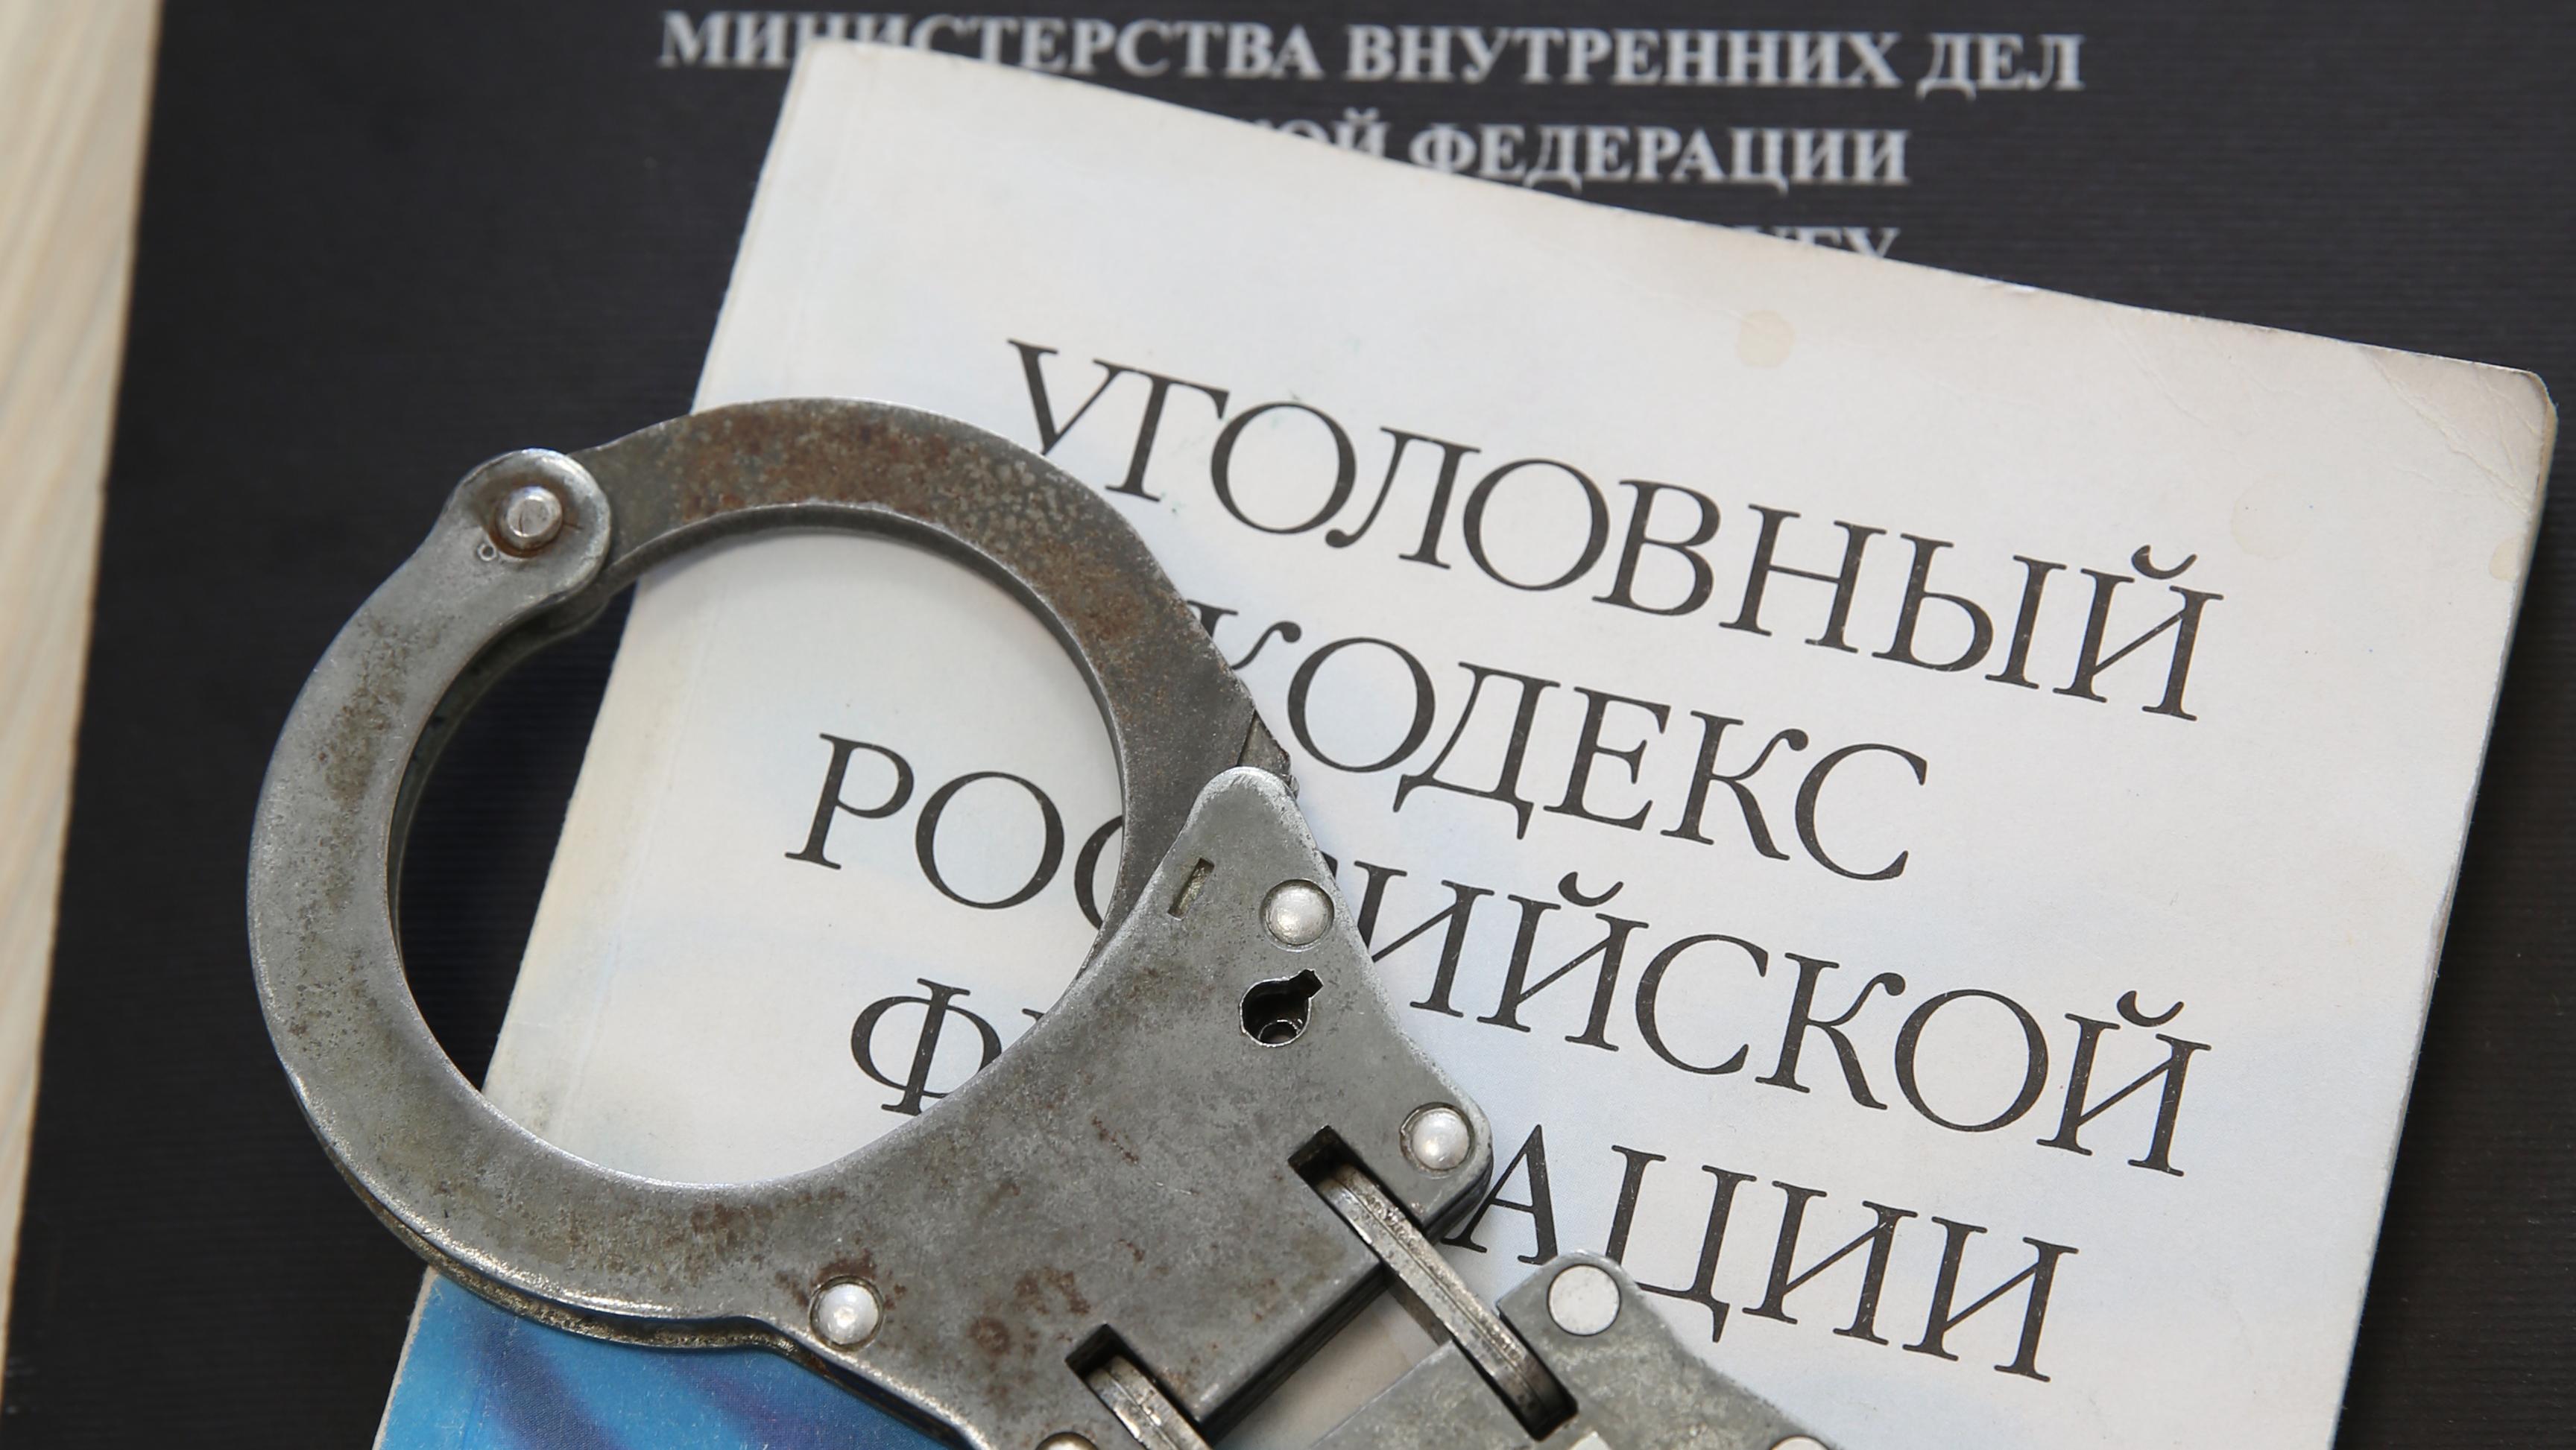 Нижегородские полицейские задержали 19 участников ячейки запрещённой религиозной организации